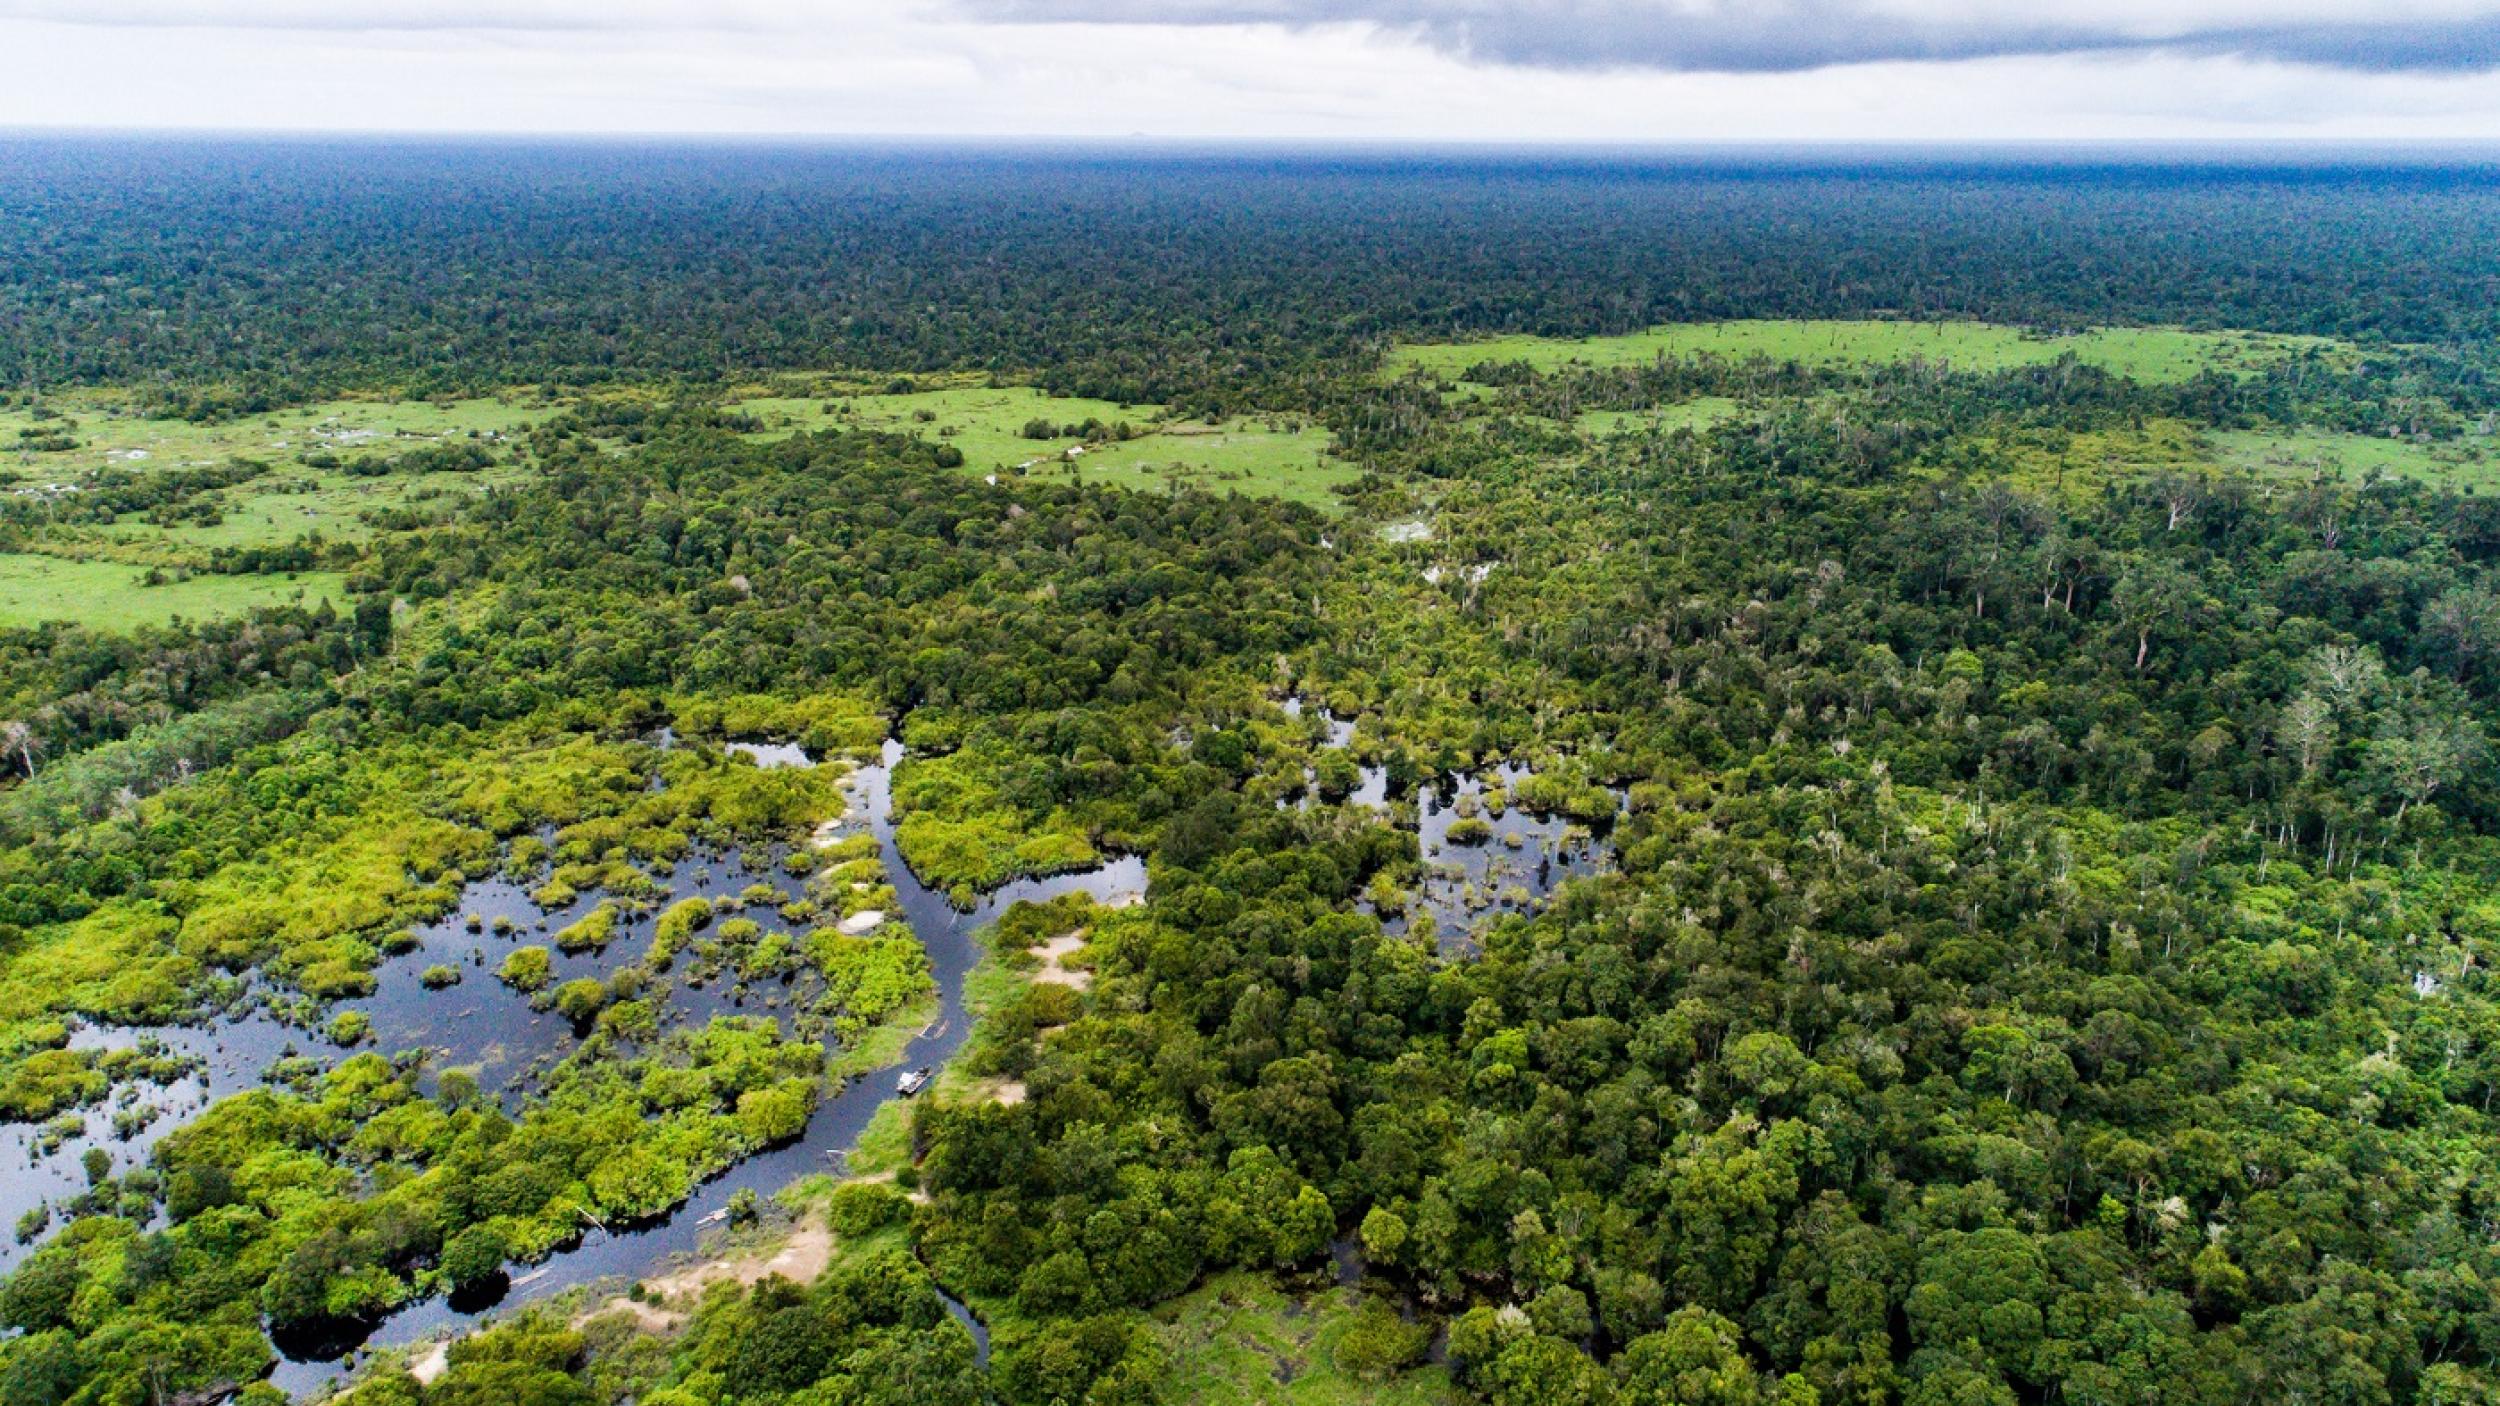 Peatland in Kalimantan Indonesia